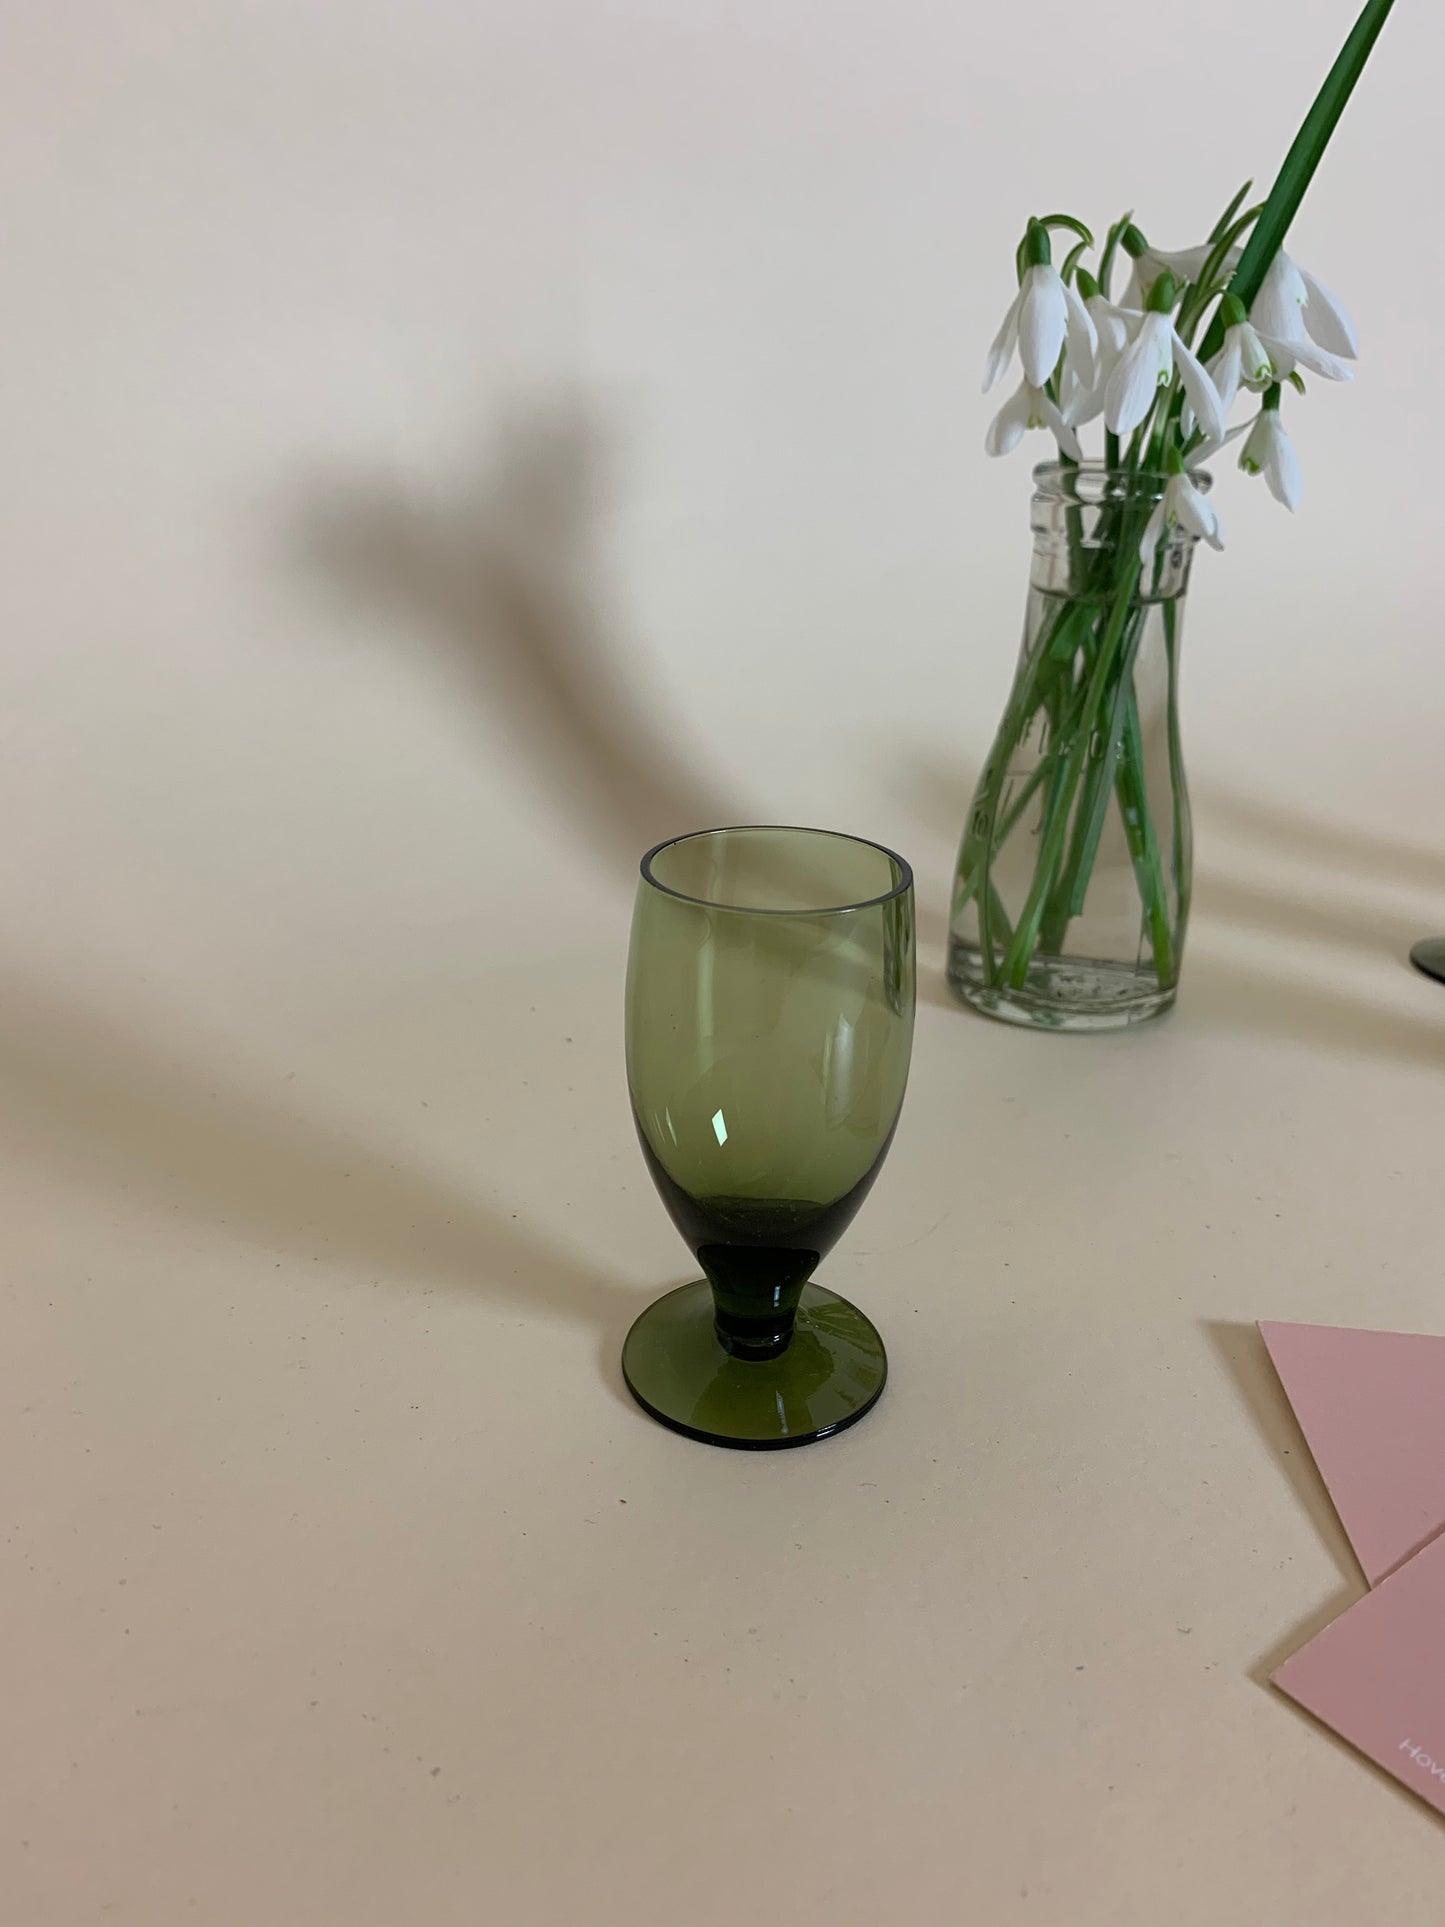 Lille grønt glas eller vase til små blomster